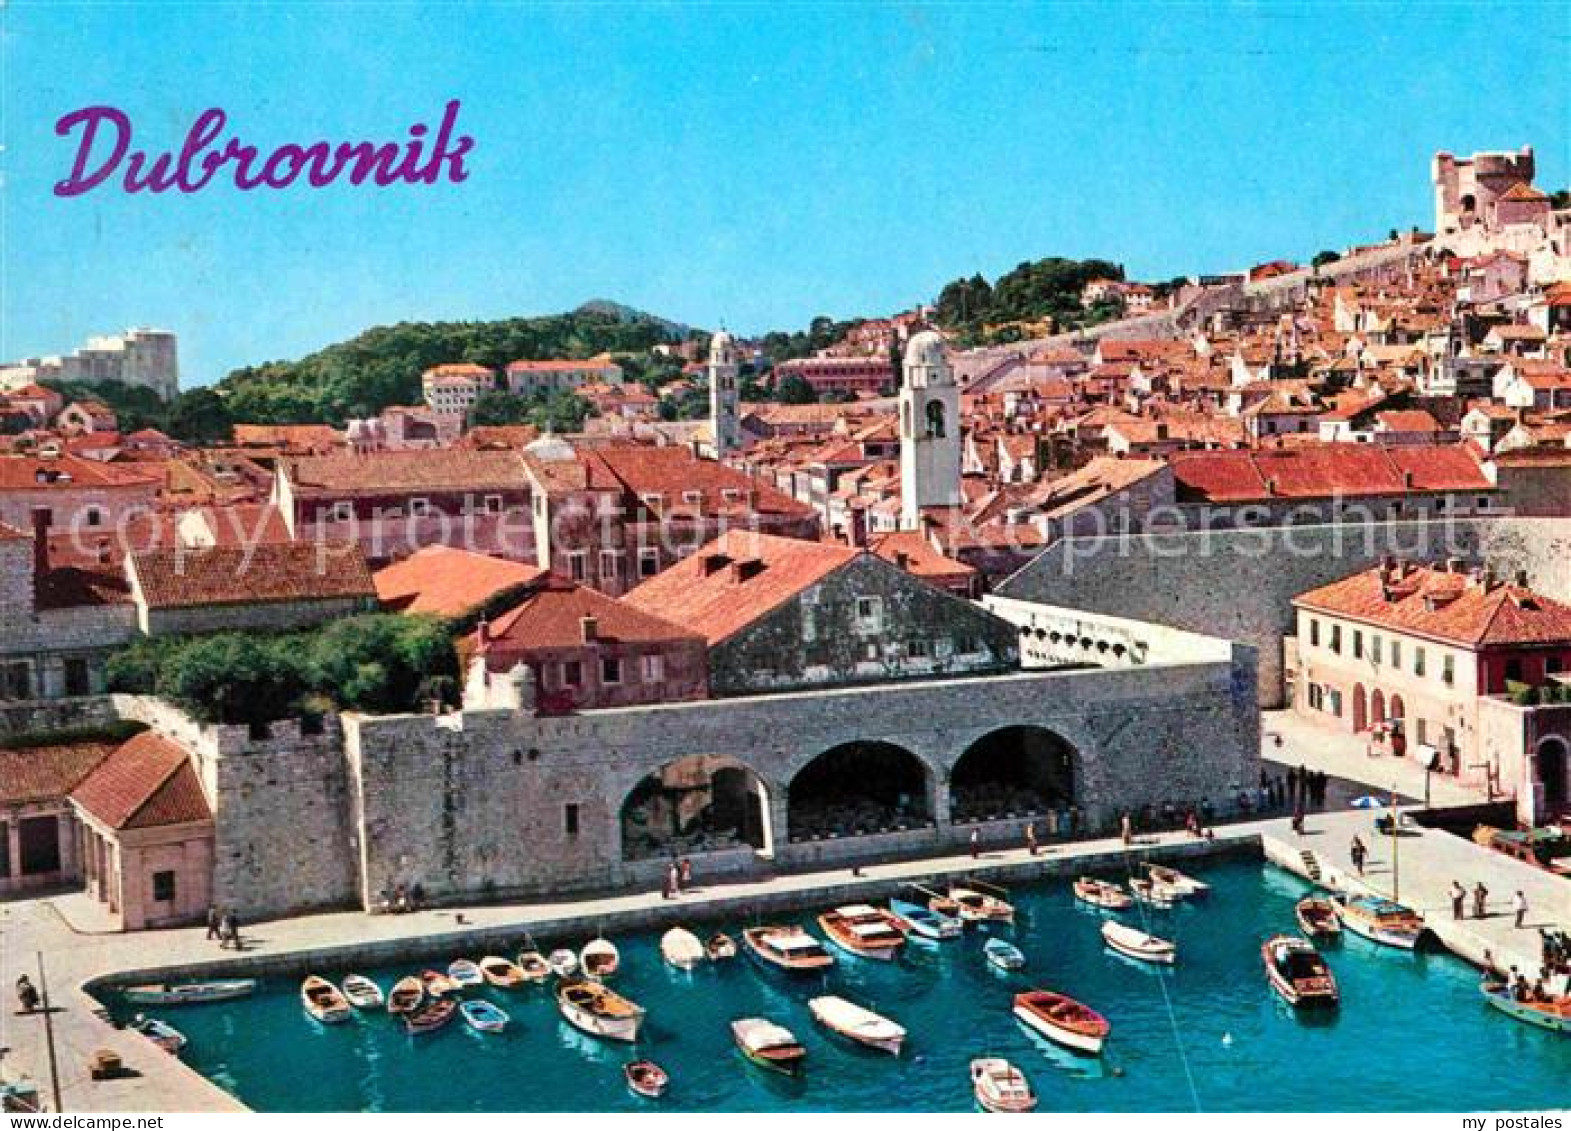 72713313 Dubrovnik Ragusa Hafen Altstadt Croatia - Croacia